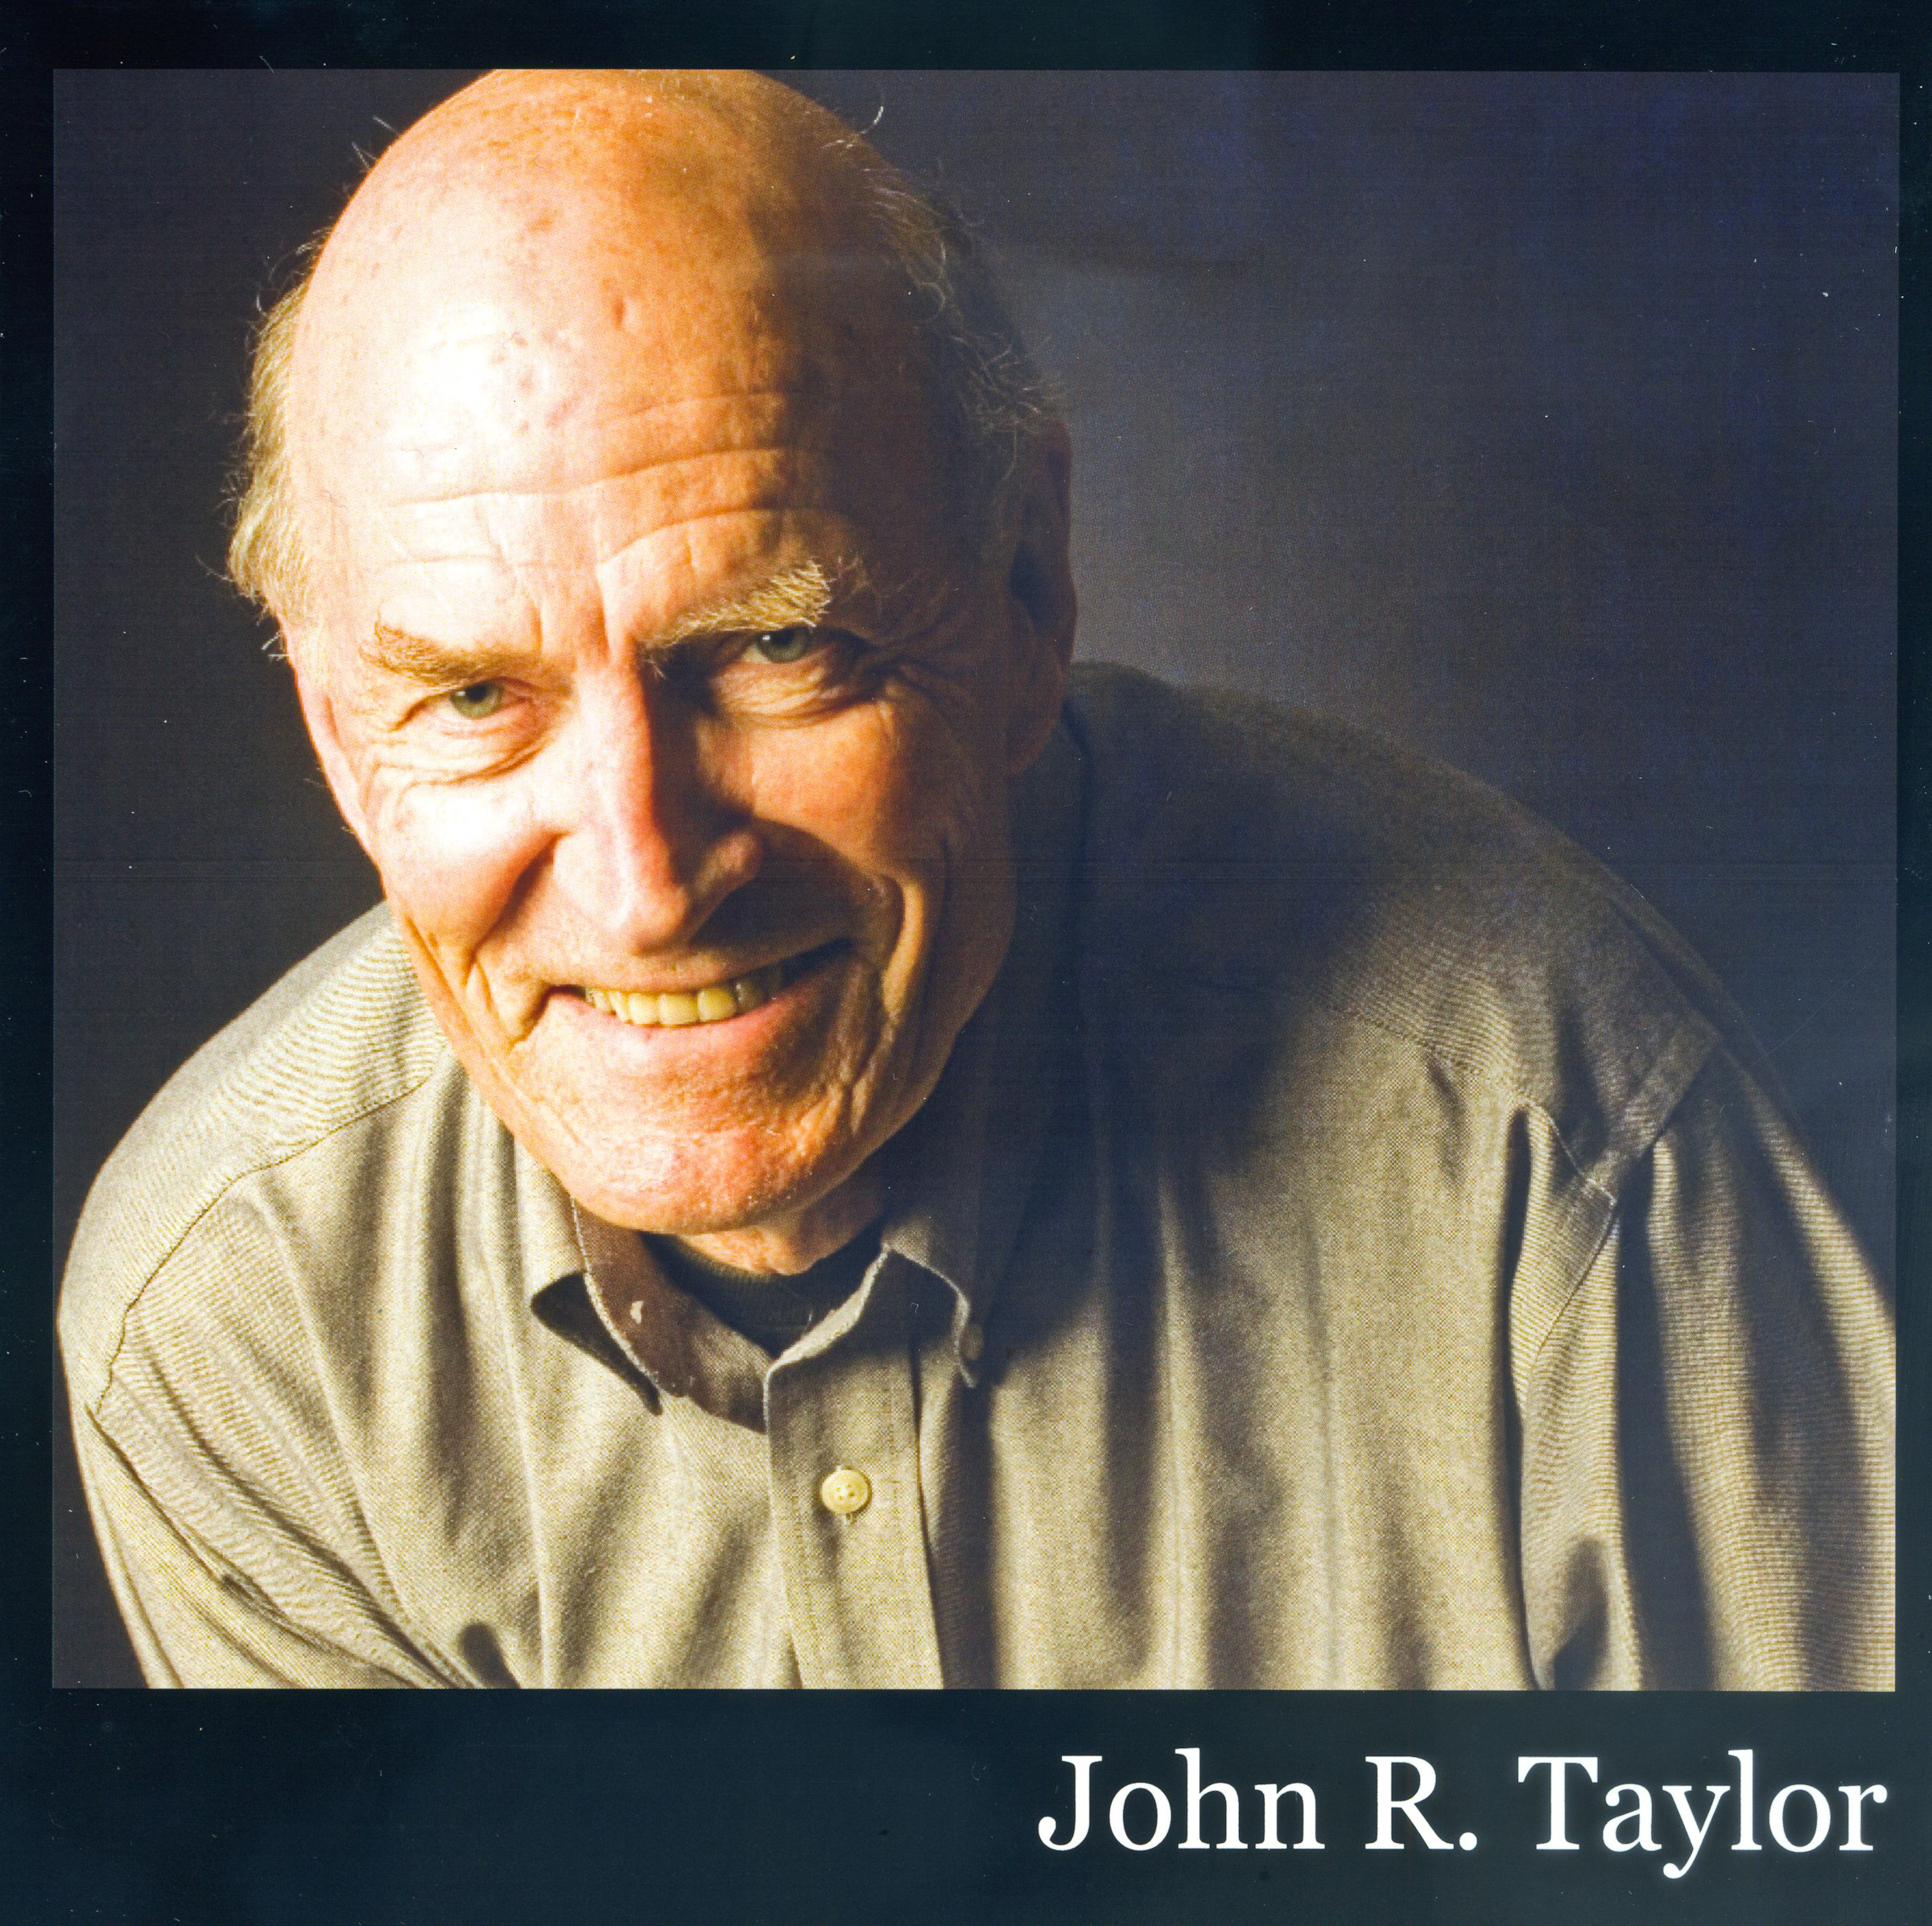 John R. Taylor